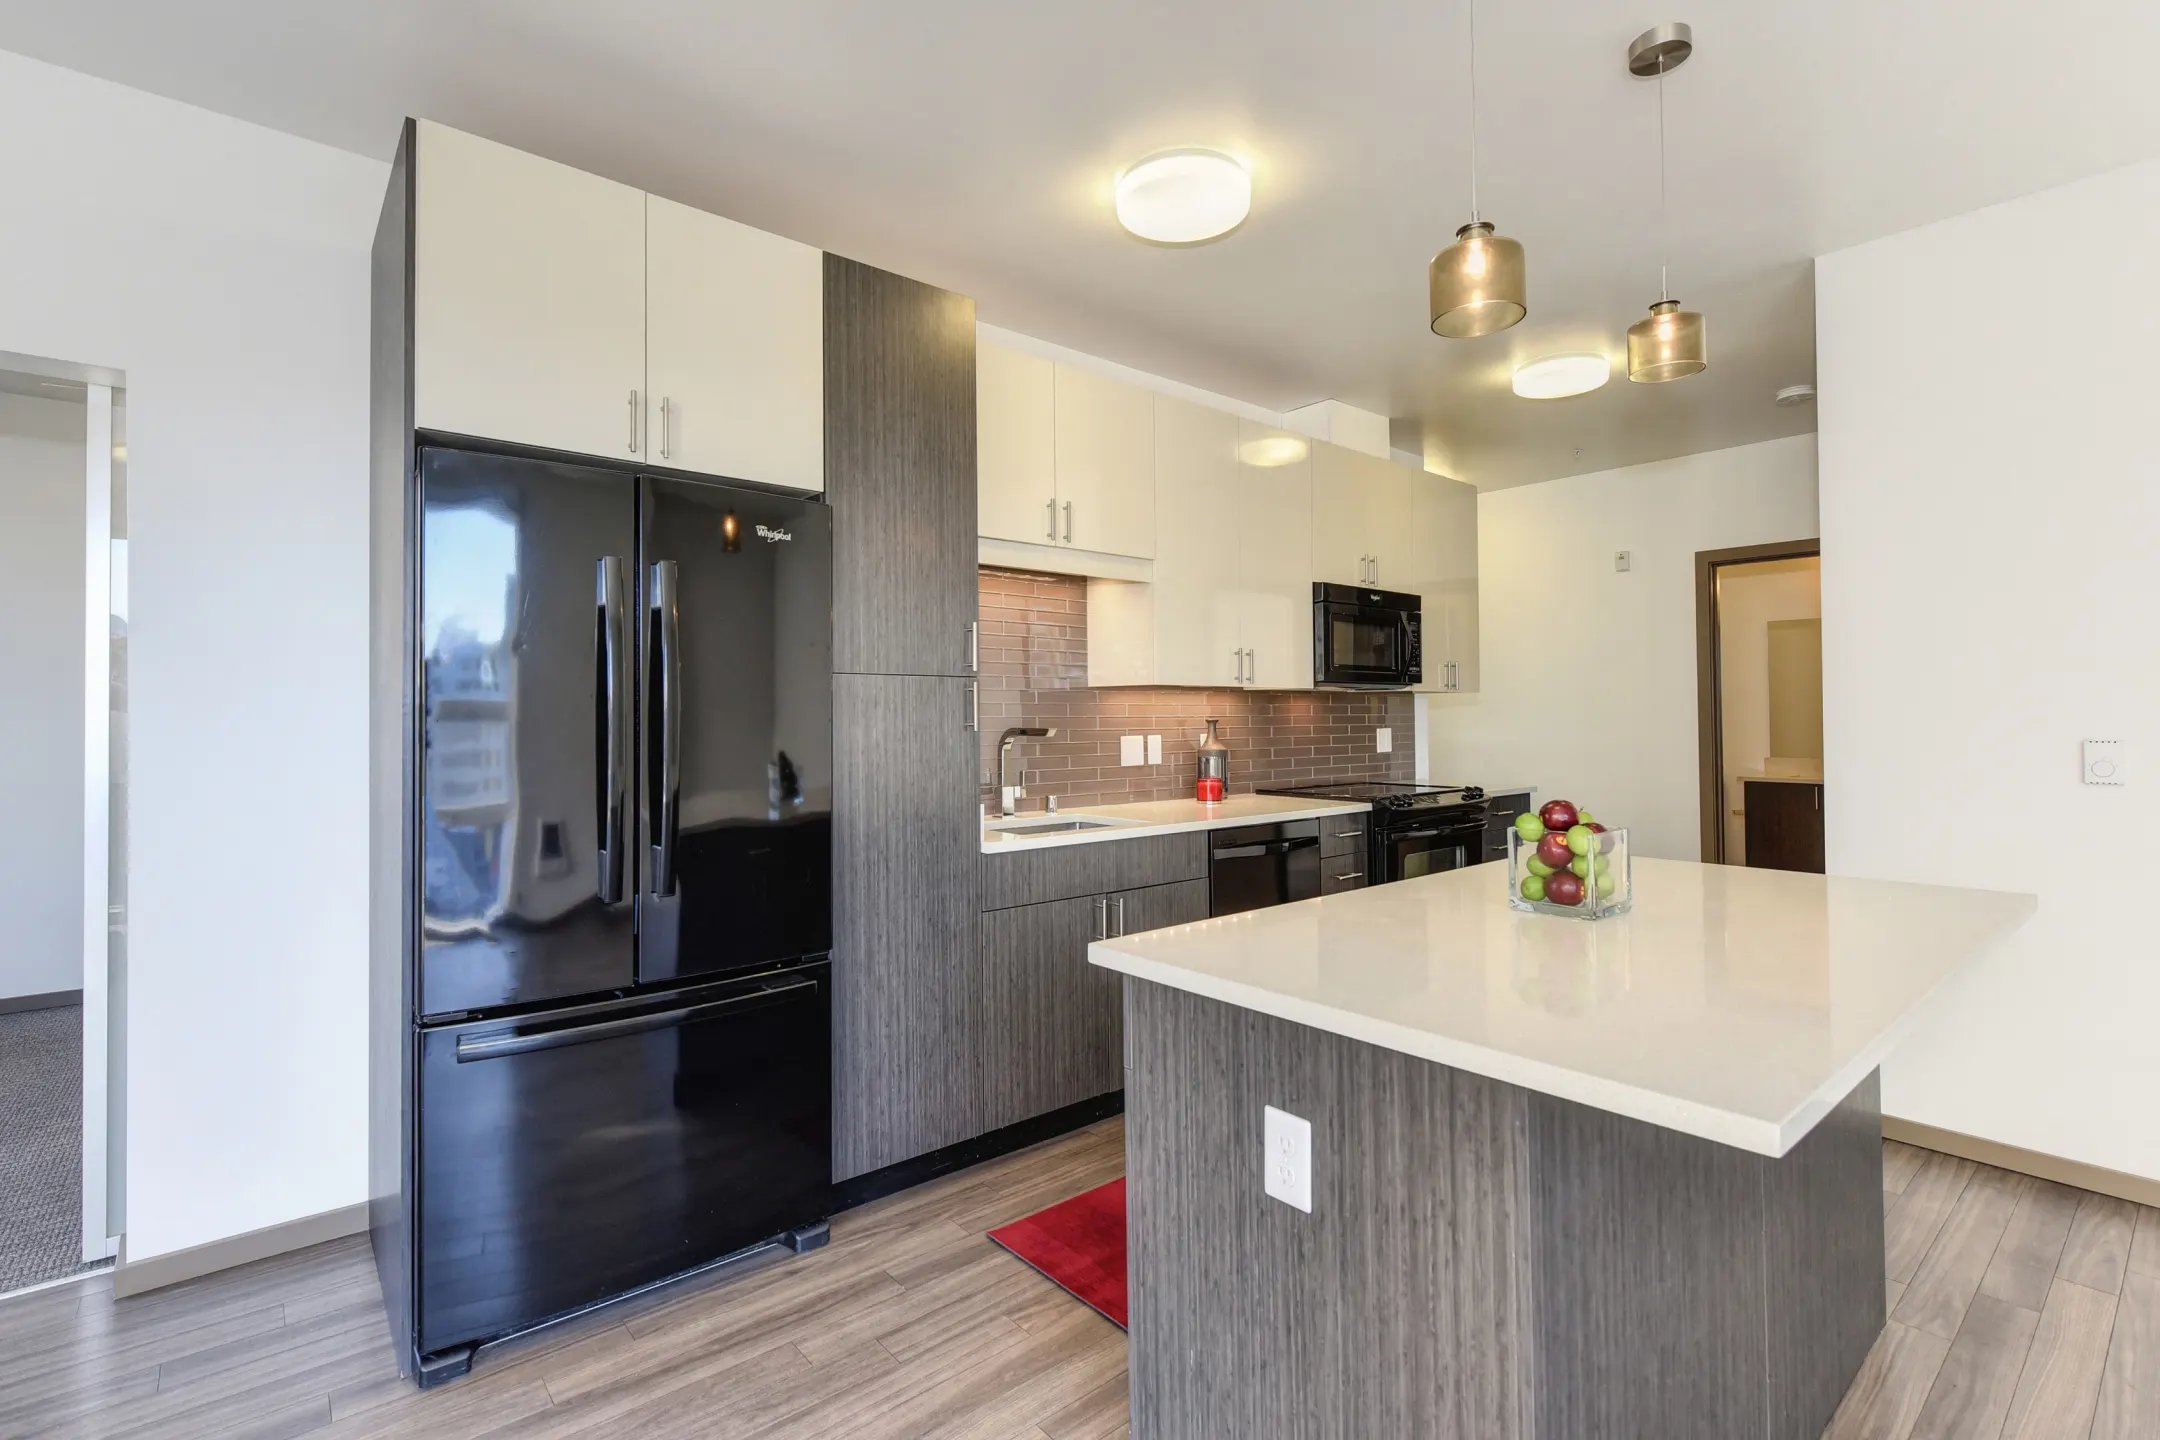 Kitchen - Rivet Apartments - Seattle, WA